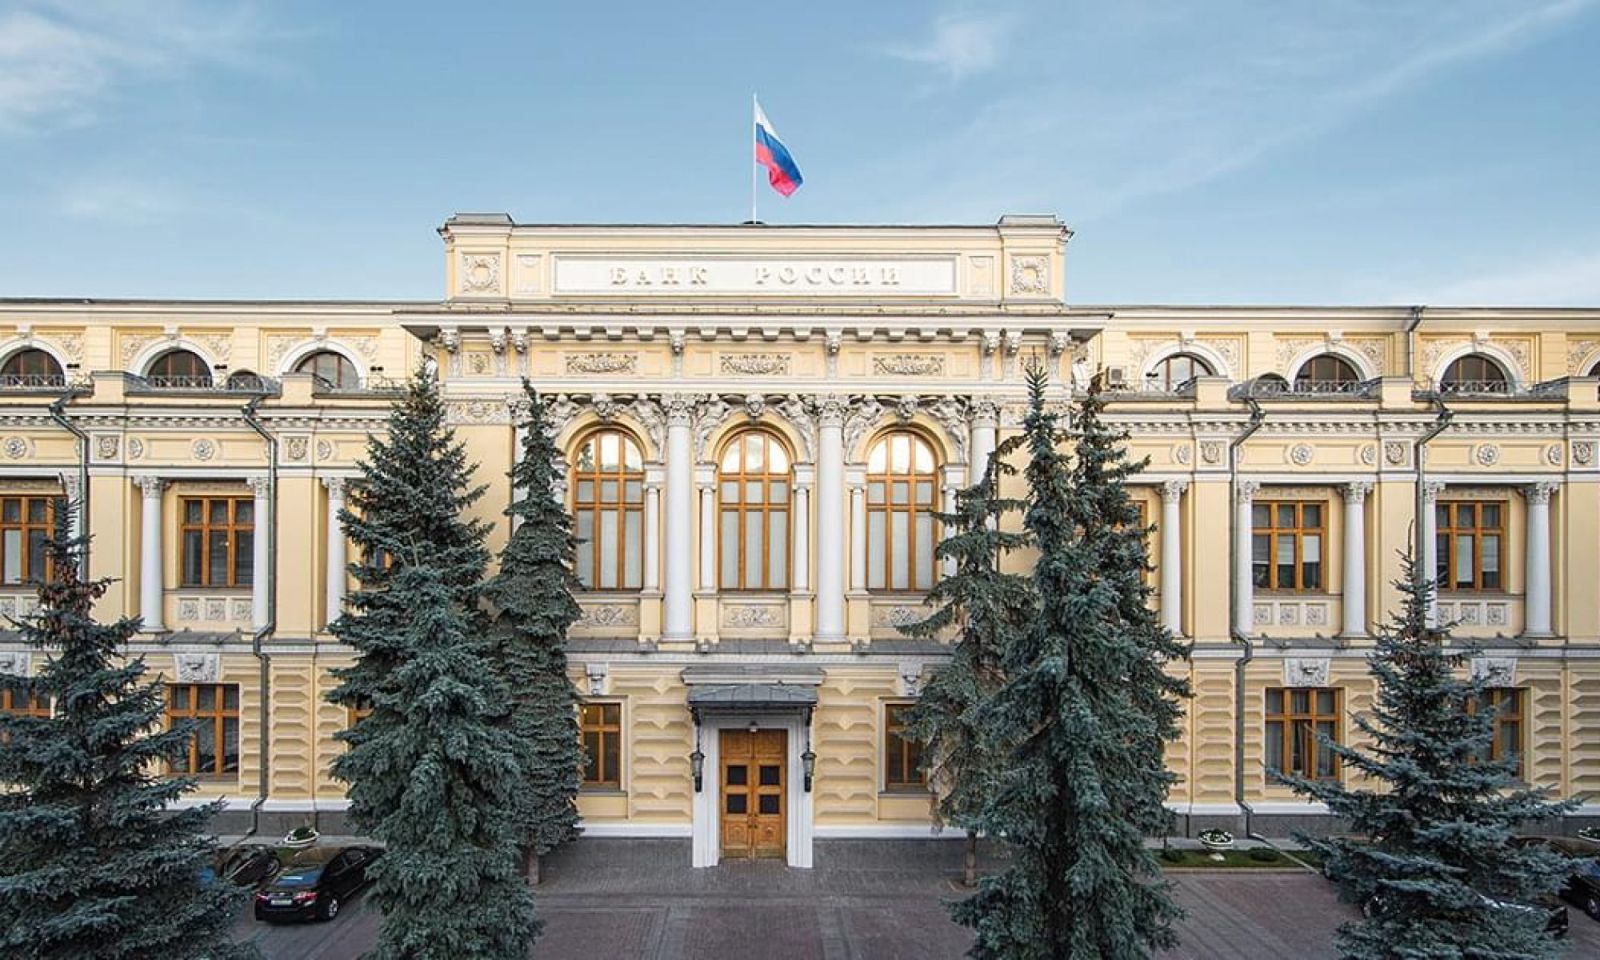 Rusiya Mərkəzi Bankı uçot dərəcəsini artırdı